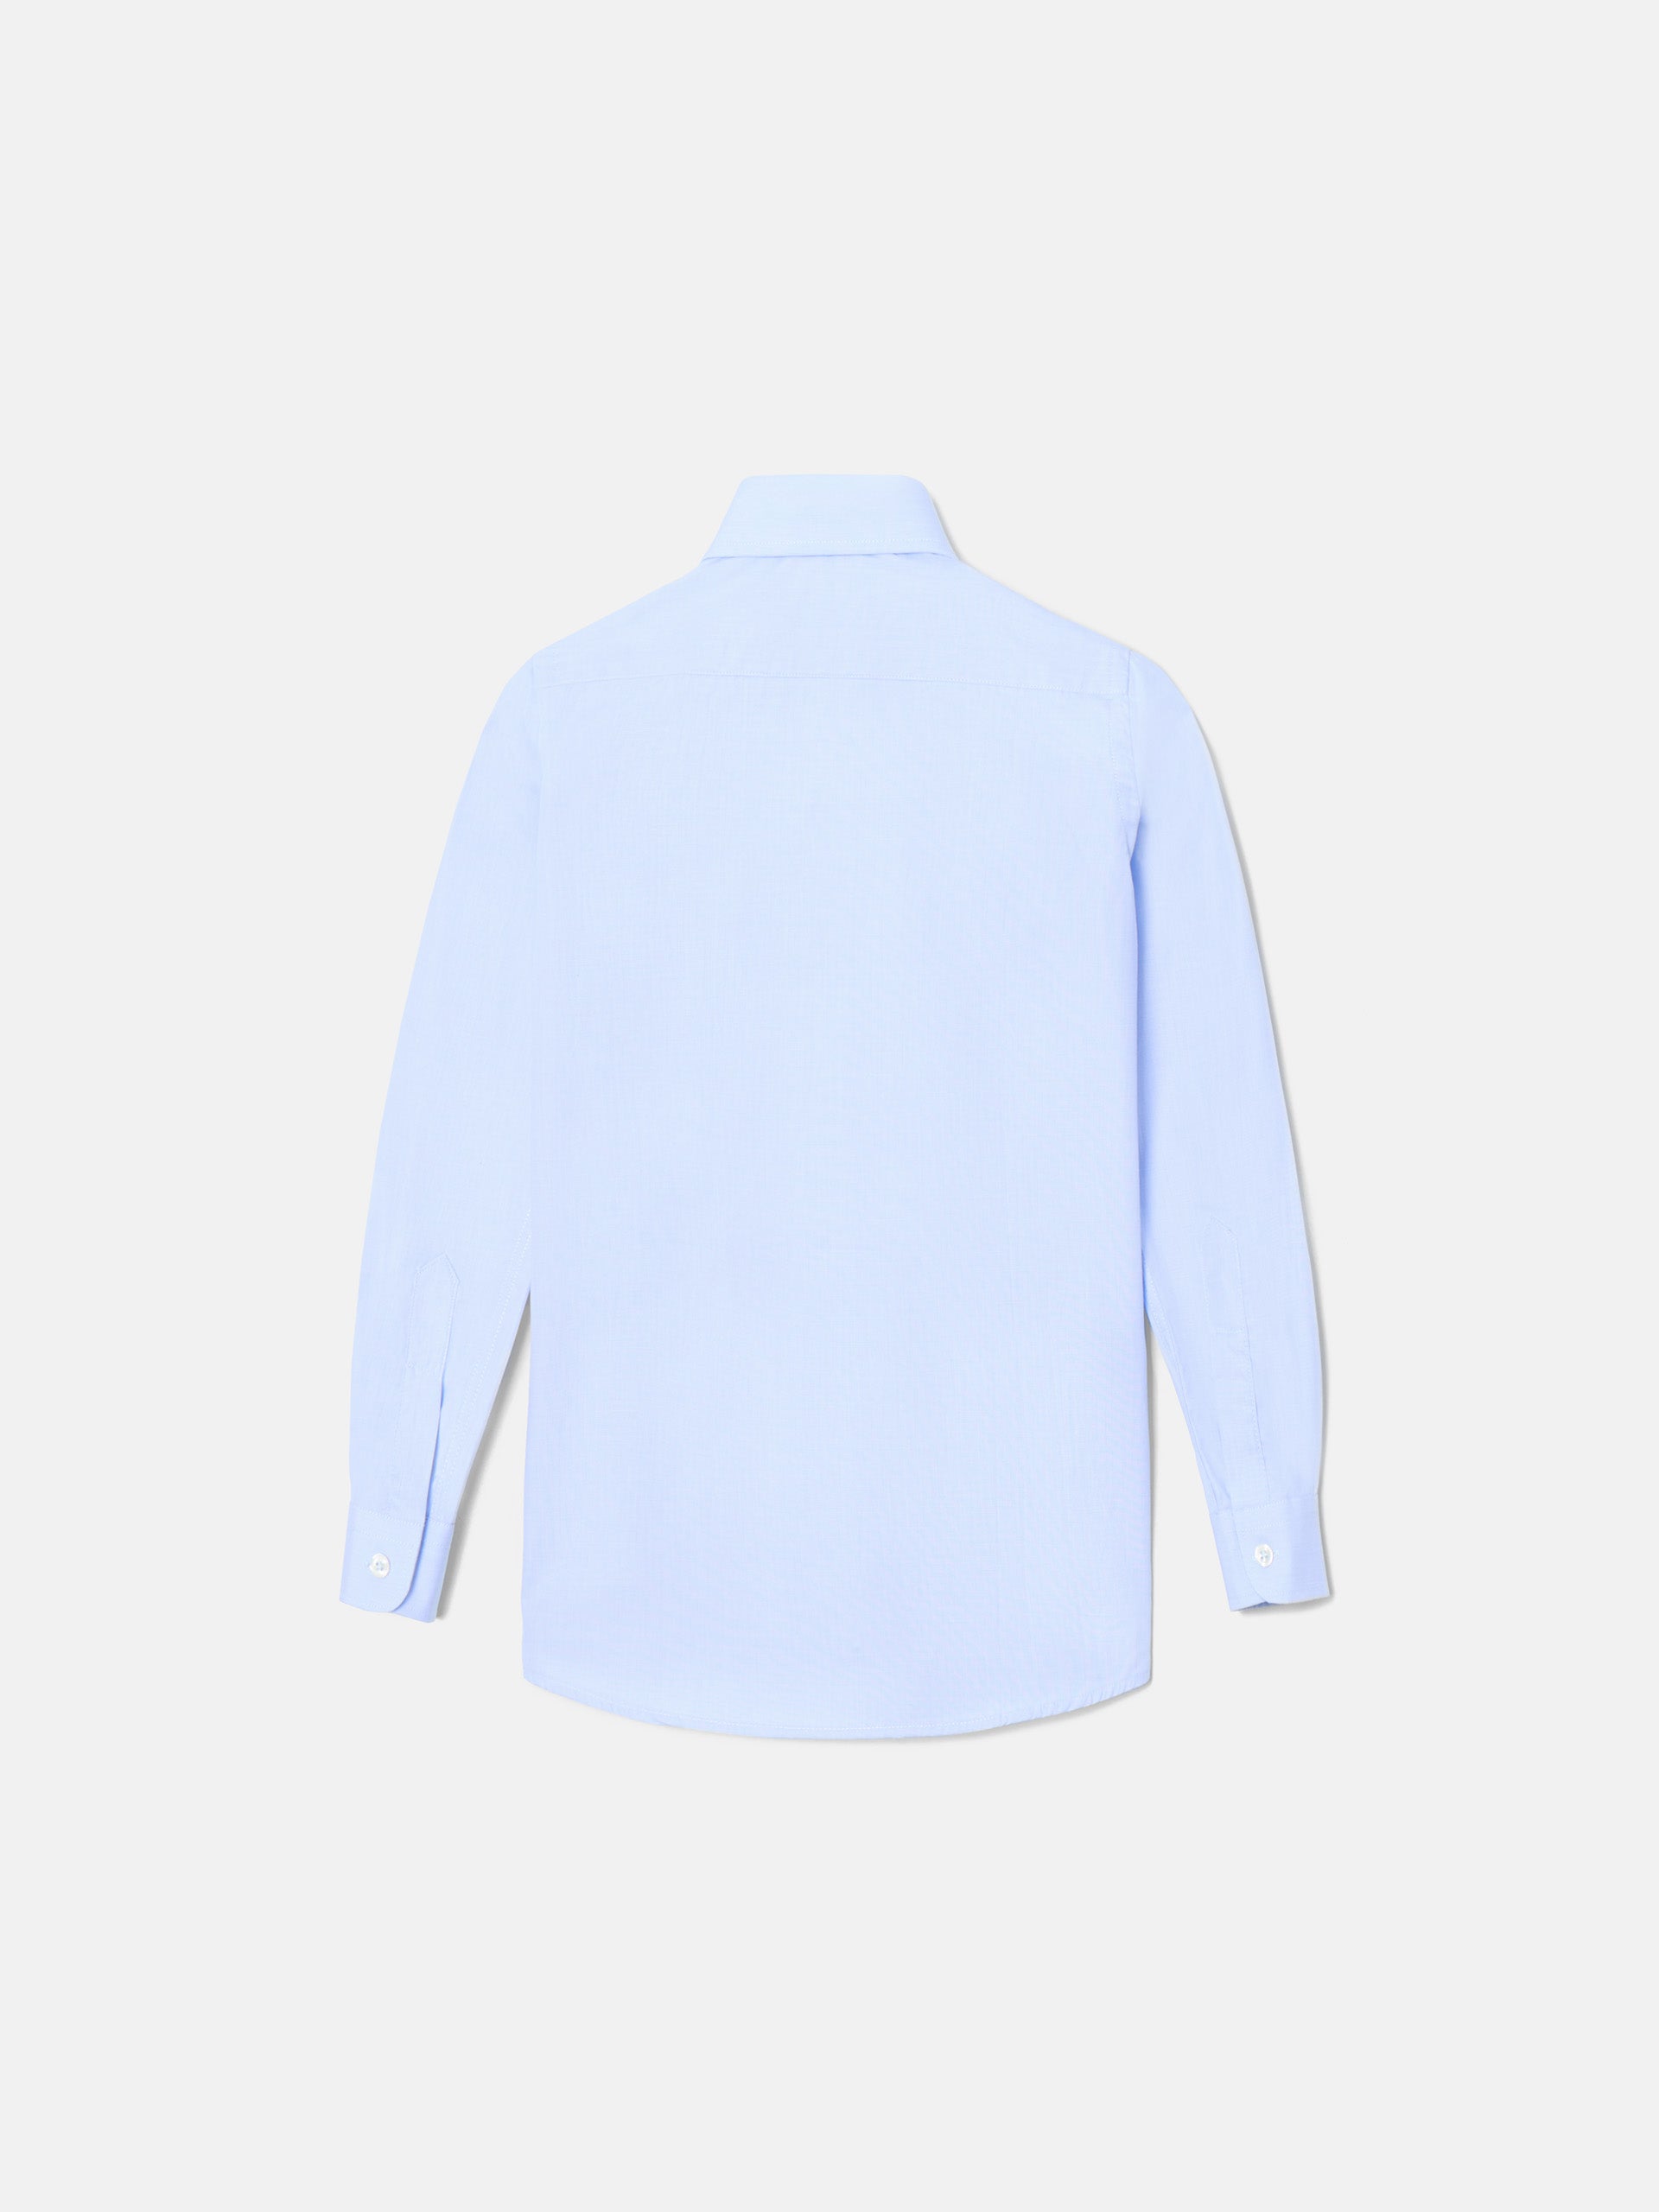 Light blue single cuff kids dress shirt